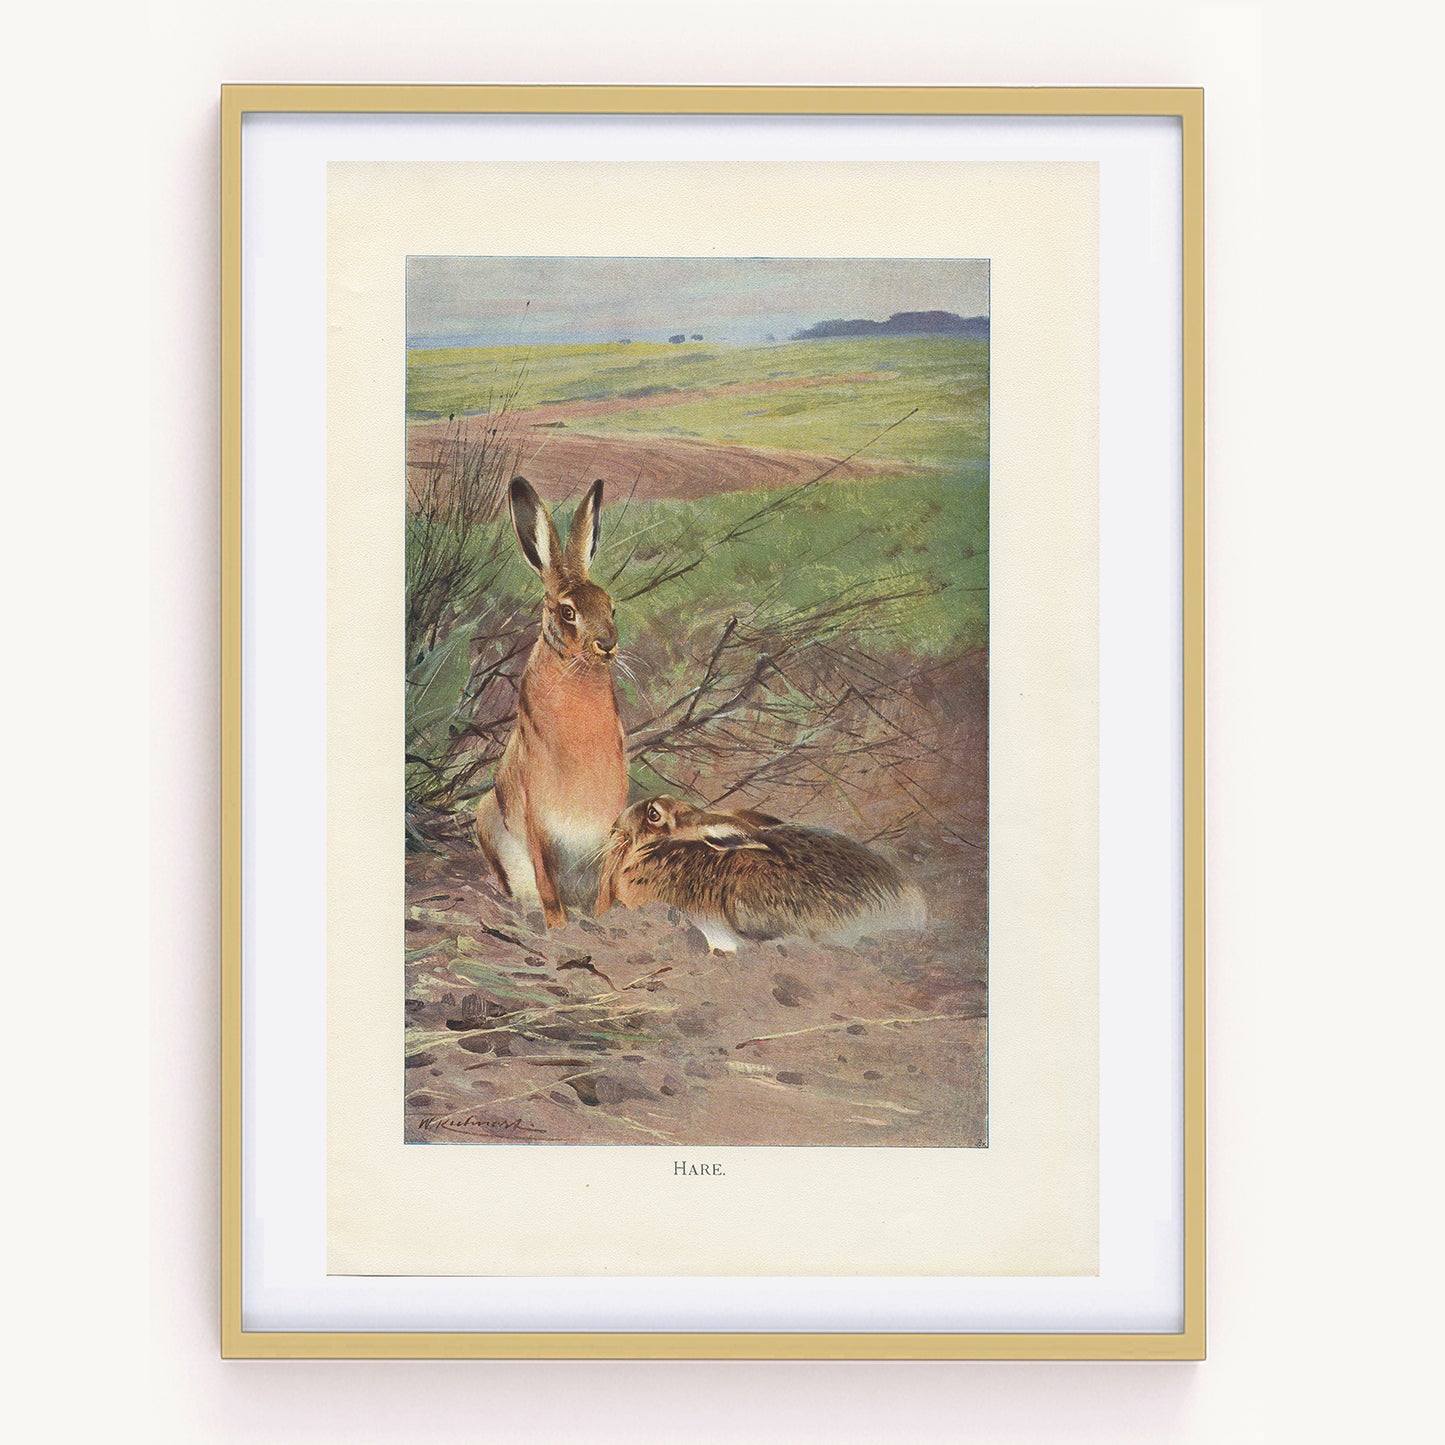 1916 Hare Print - Lydekker